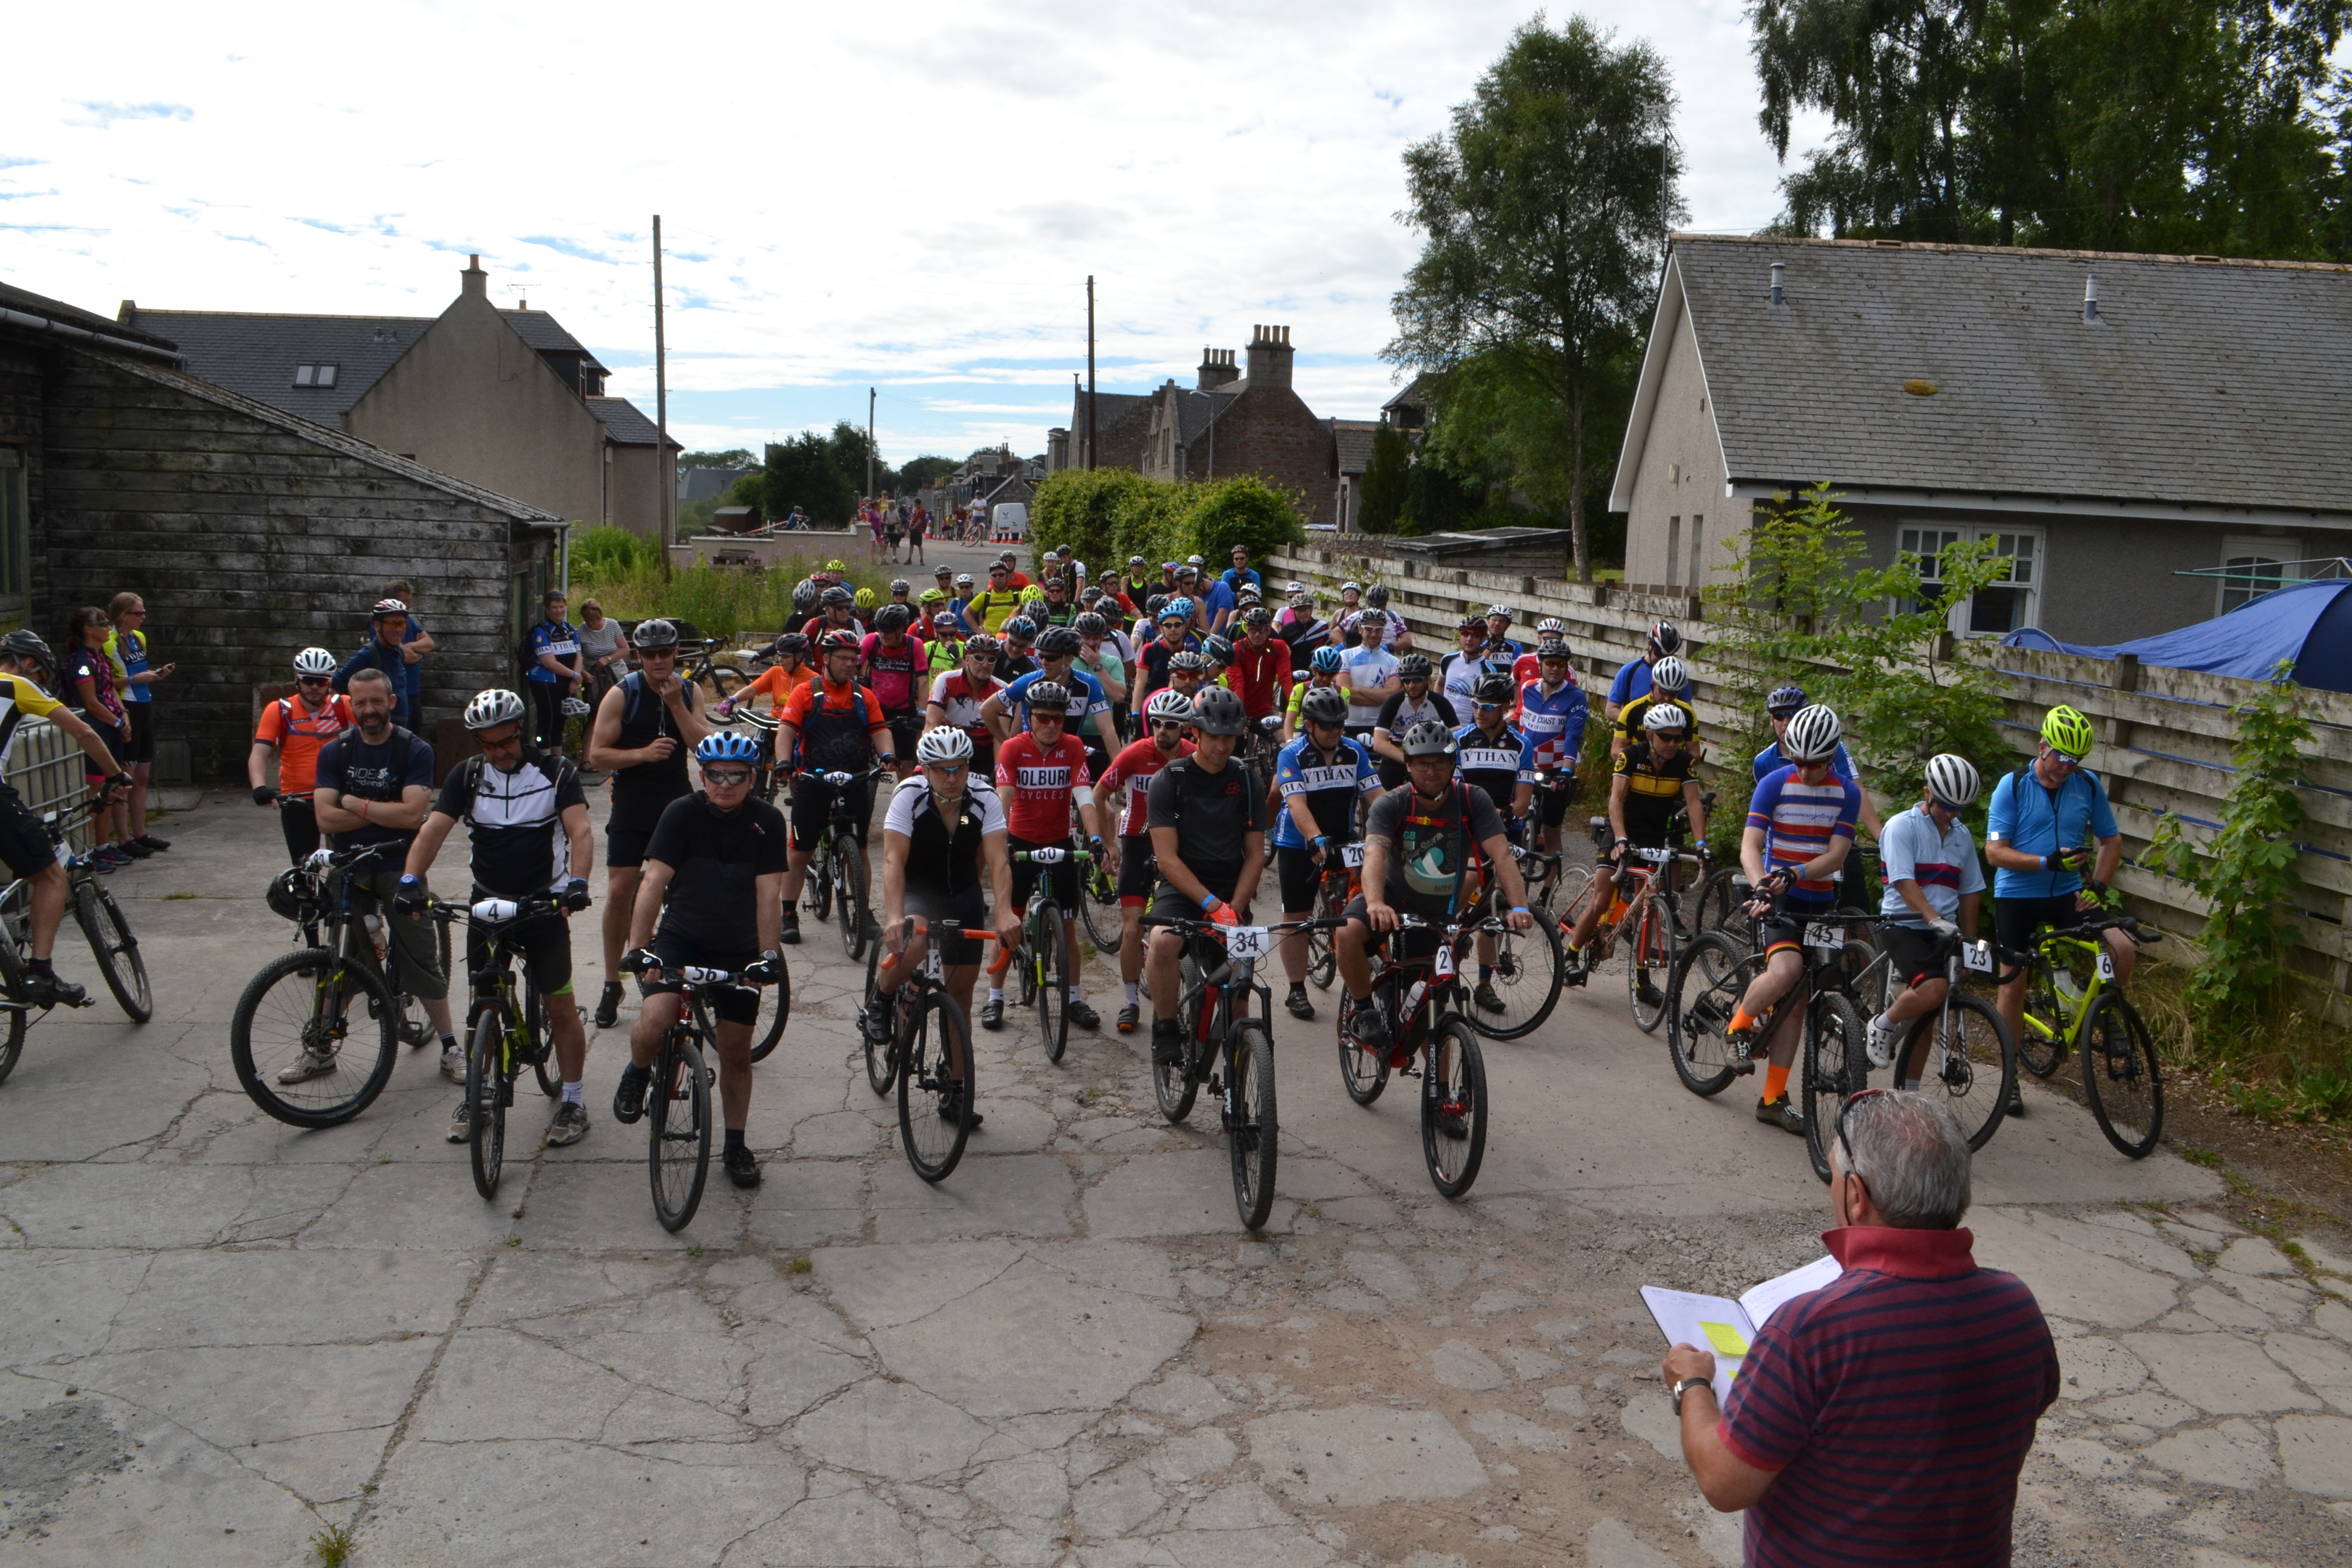 180 riders took part